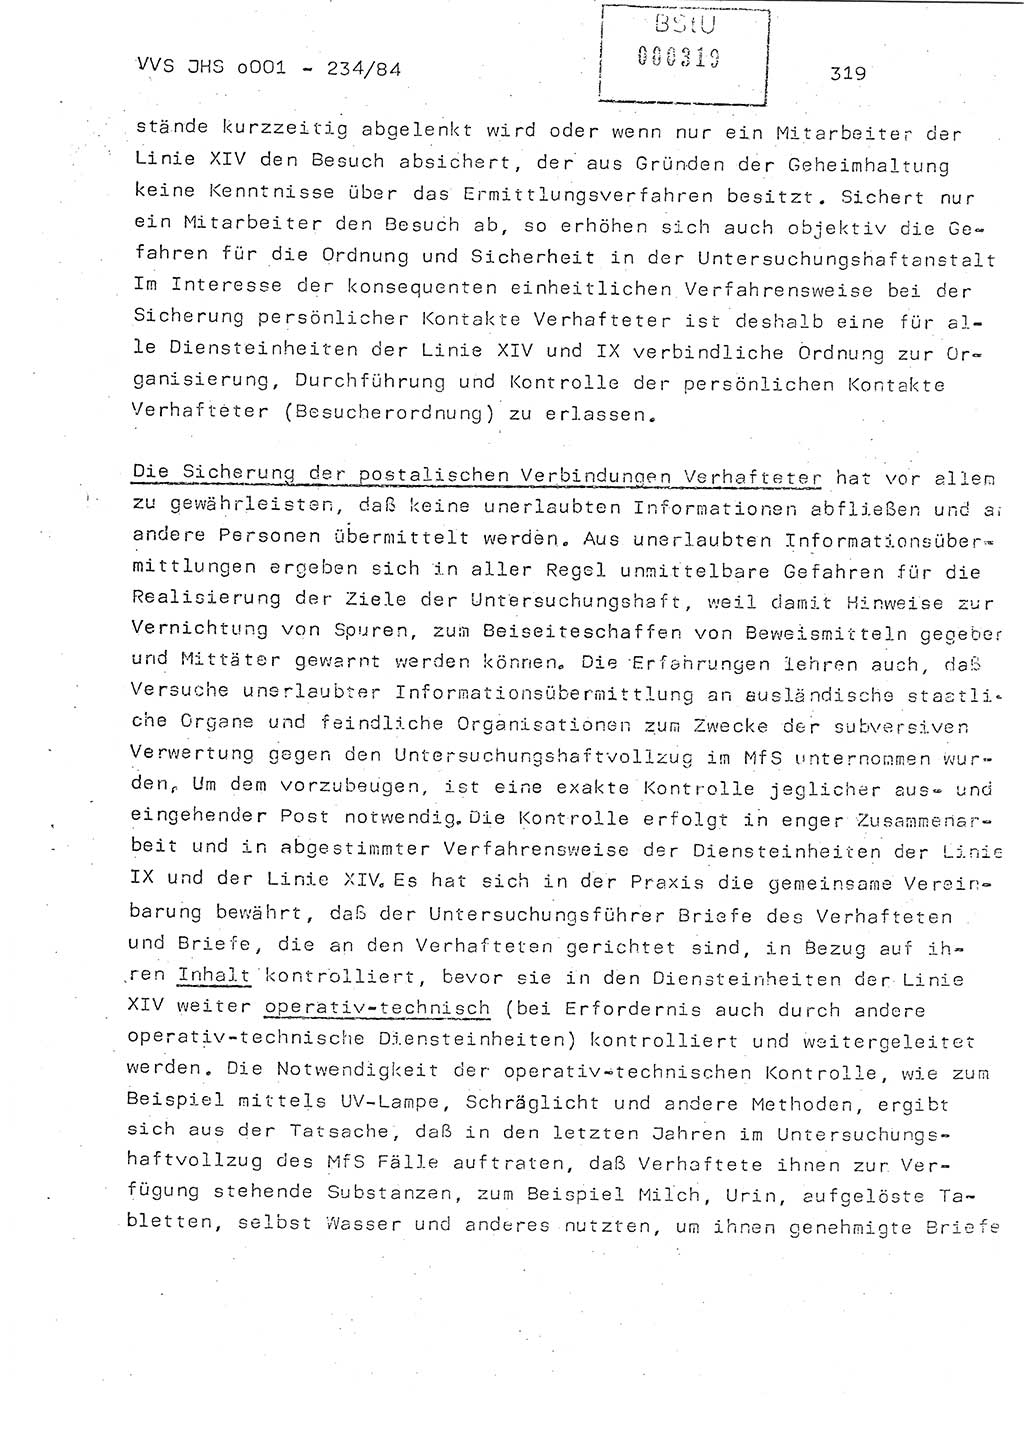 Dissertation Oberst Siegfried Rataizick (Abt. ⅩⅣ), Oberstleutnant Volkmar Heinz (Abt. ⅩⅣ), Oberstleutnant Werner Stein (HA Ⅸ), Hauptmann Heinz Conrad (JHS), Ministerium für Staatssicherheit (MfS) [Deutsche Demokratische Republik (DDR)], Juristische Hochschule (JHS), Vertrauliche Verschlußsache (VVS) o001-234/84, Potsdam 1984, Seite 319 (Diss. MfS DDR JHS VVS o001-234/84 1984, S. 319)